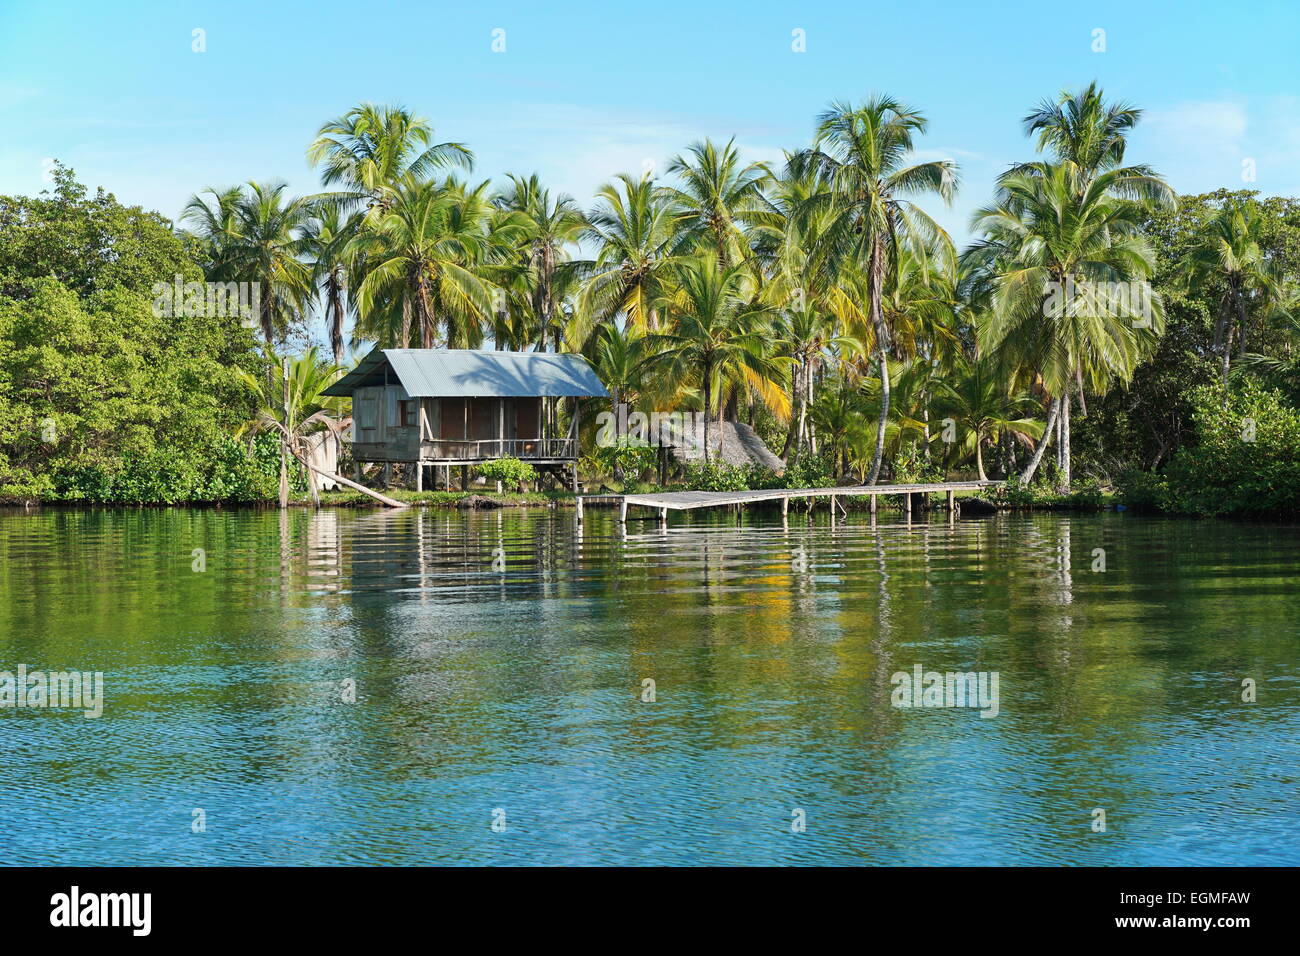 Hutte amérindienne rustique avec dock sur la côte tropical avec des cocotiers, Bocas del Toro, PANAMA, Amérique Centrale, Caraïbes Banque D'Images